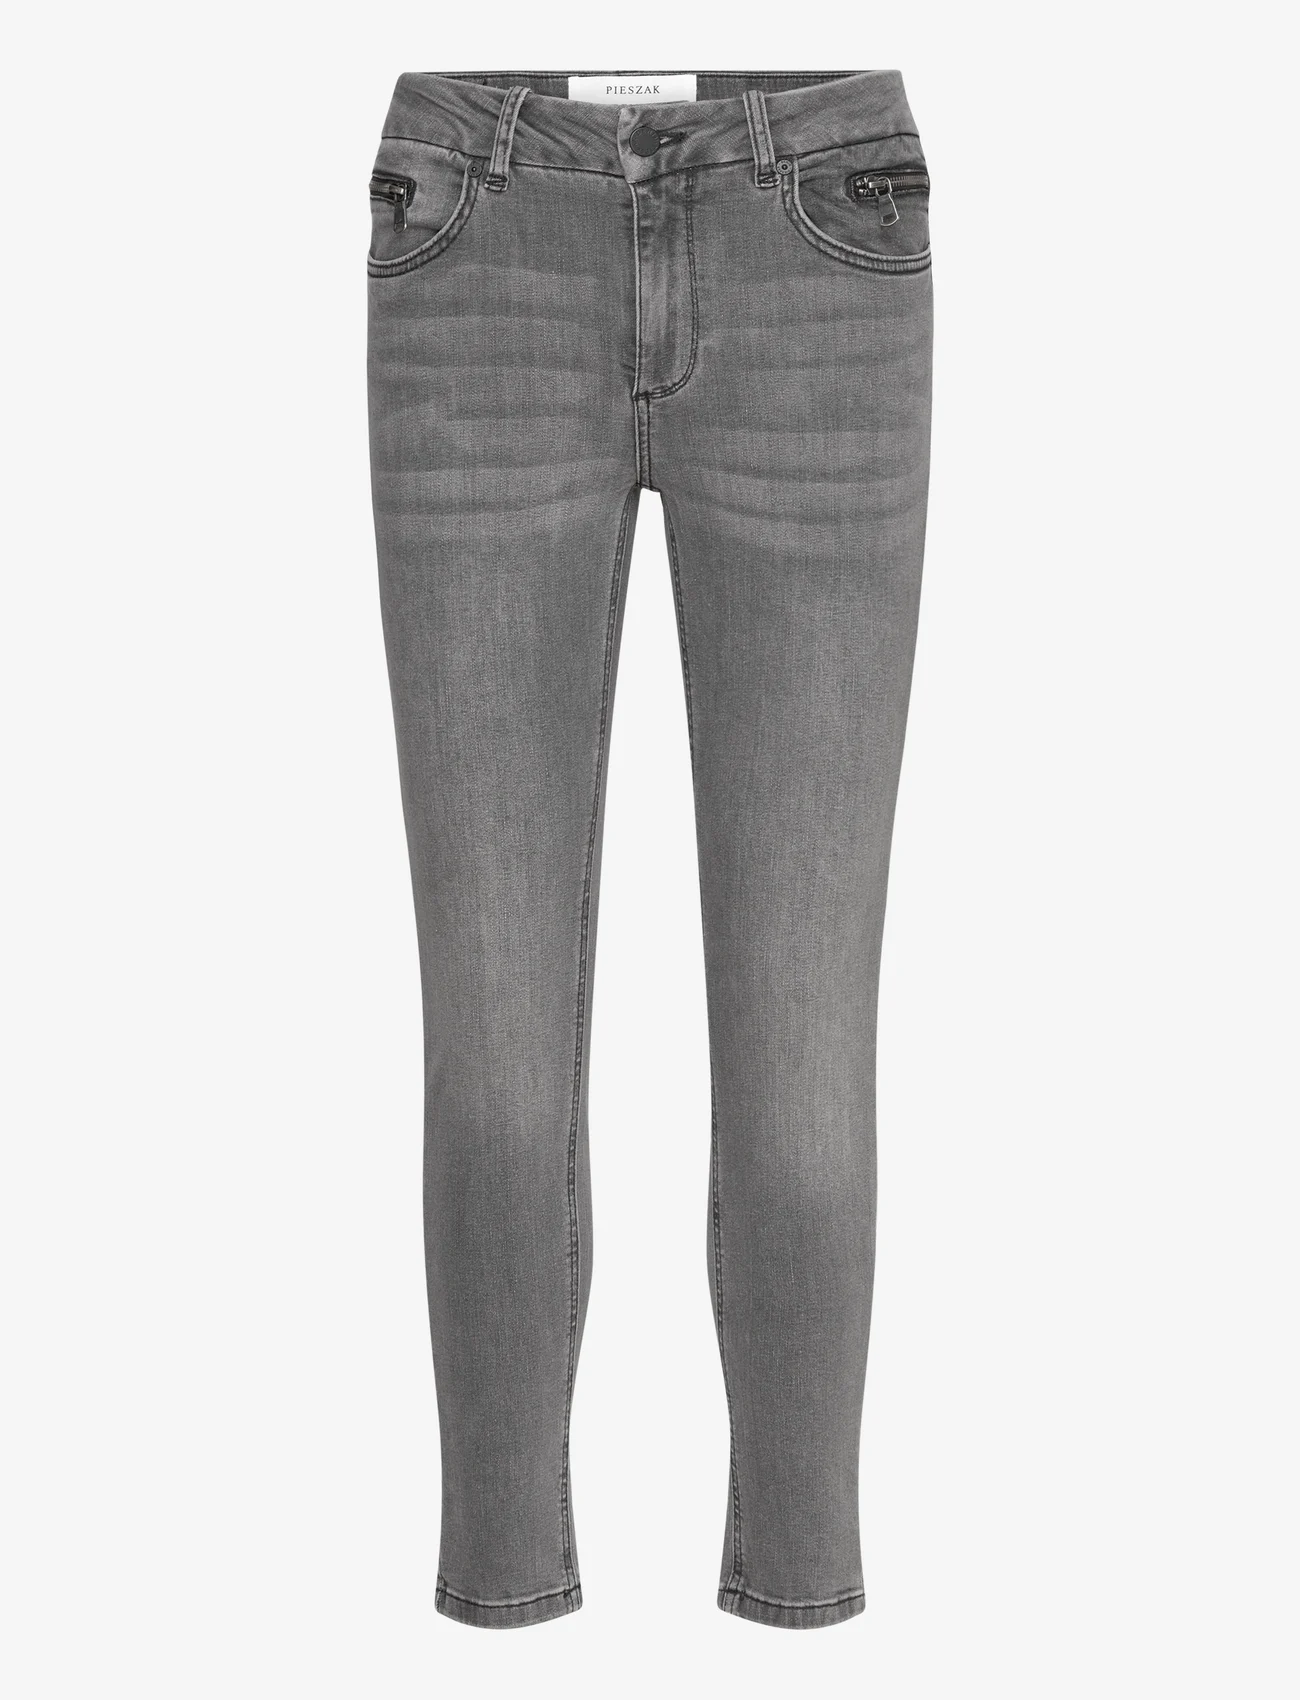 Pieszak - PD-Naomi Jeans Wash Awesome Grey - slim jeans - grey - 0